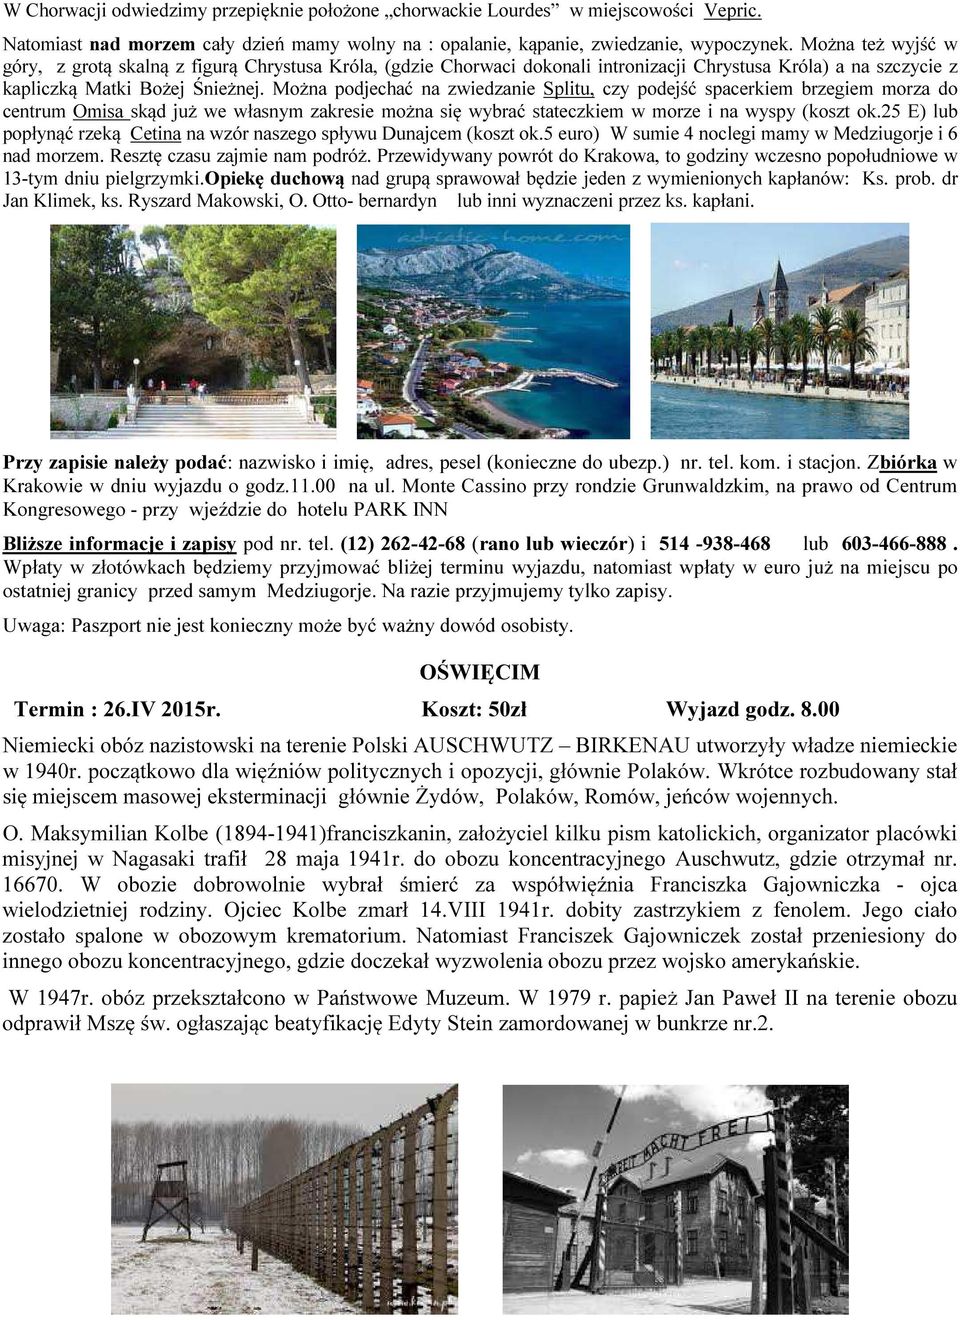 Można podjechać na zwiedzanie Splitu, czy podejść spacerkiem brzegiem morza do centrum Omisa skąd już we własnym zakresie można się wybrać stateczkiem w morze i na wyspy (koszt ok.